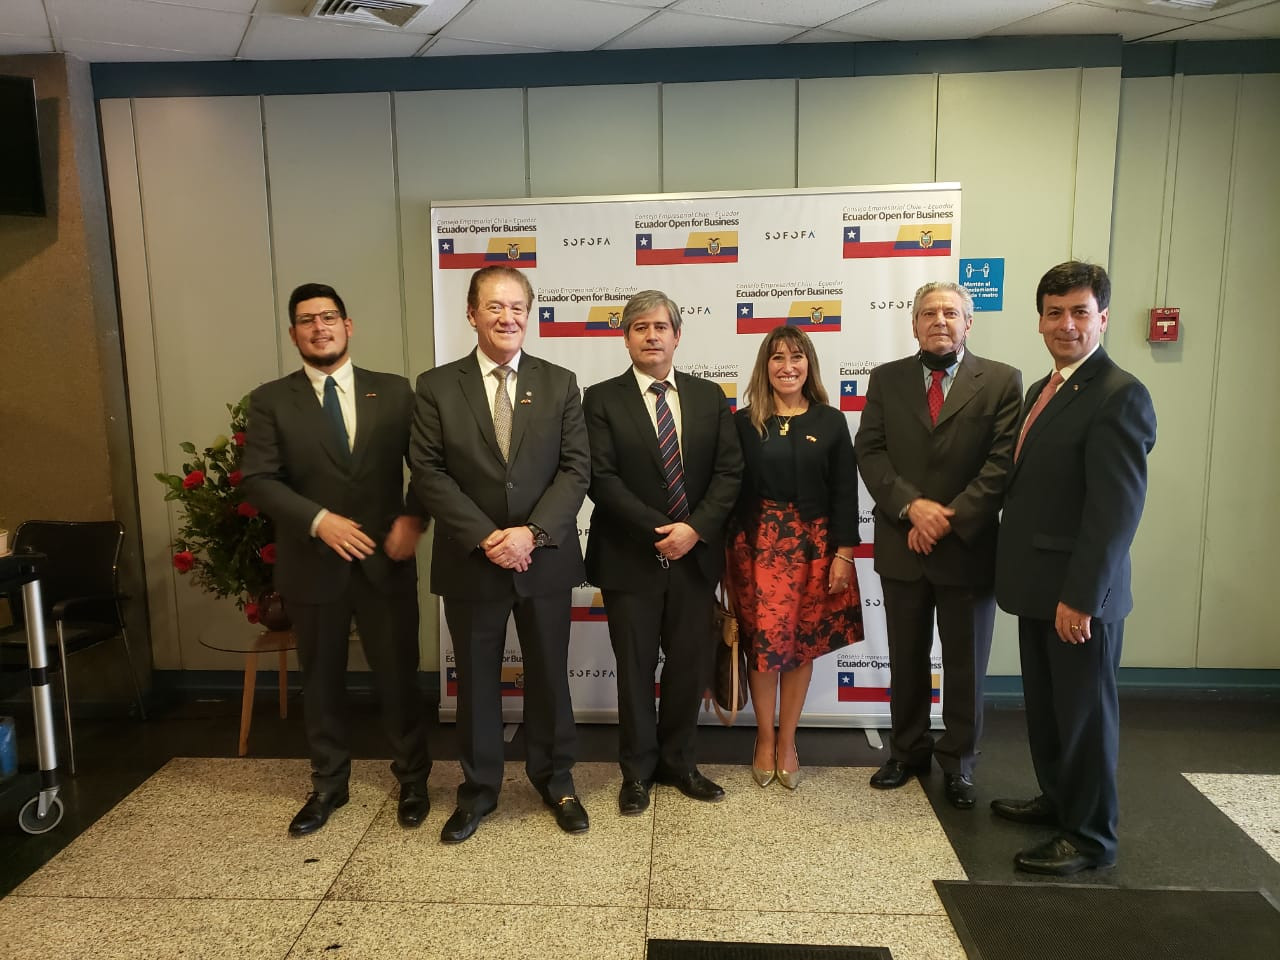 Miembros de las cámaras hermanas de Comercio Ecuatoriano Chilena y Chilena Ecuatoriana